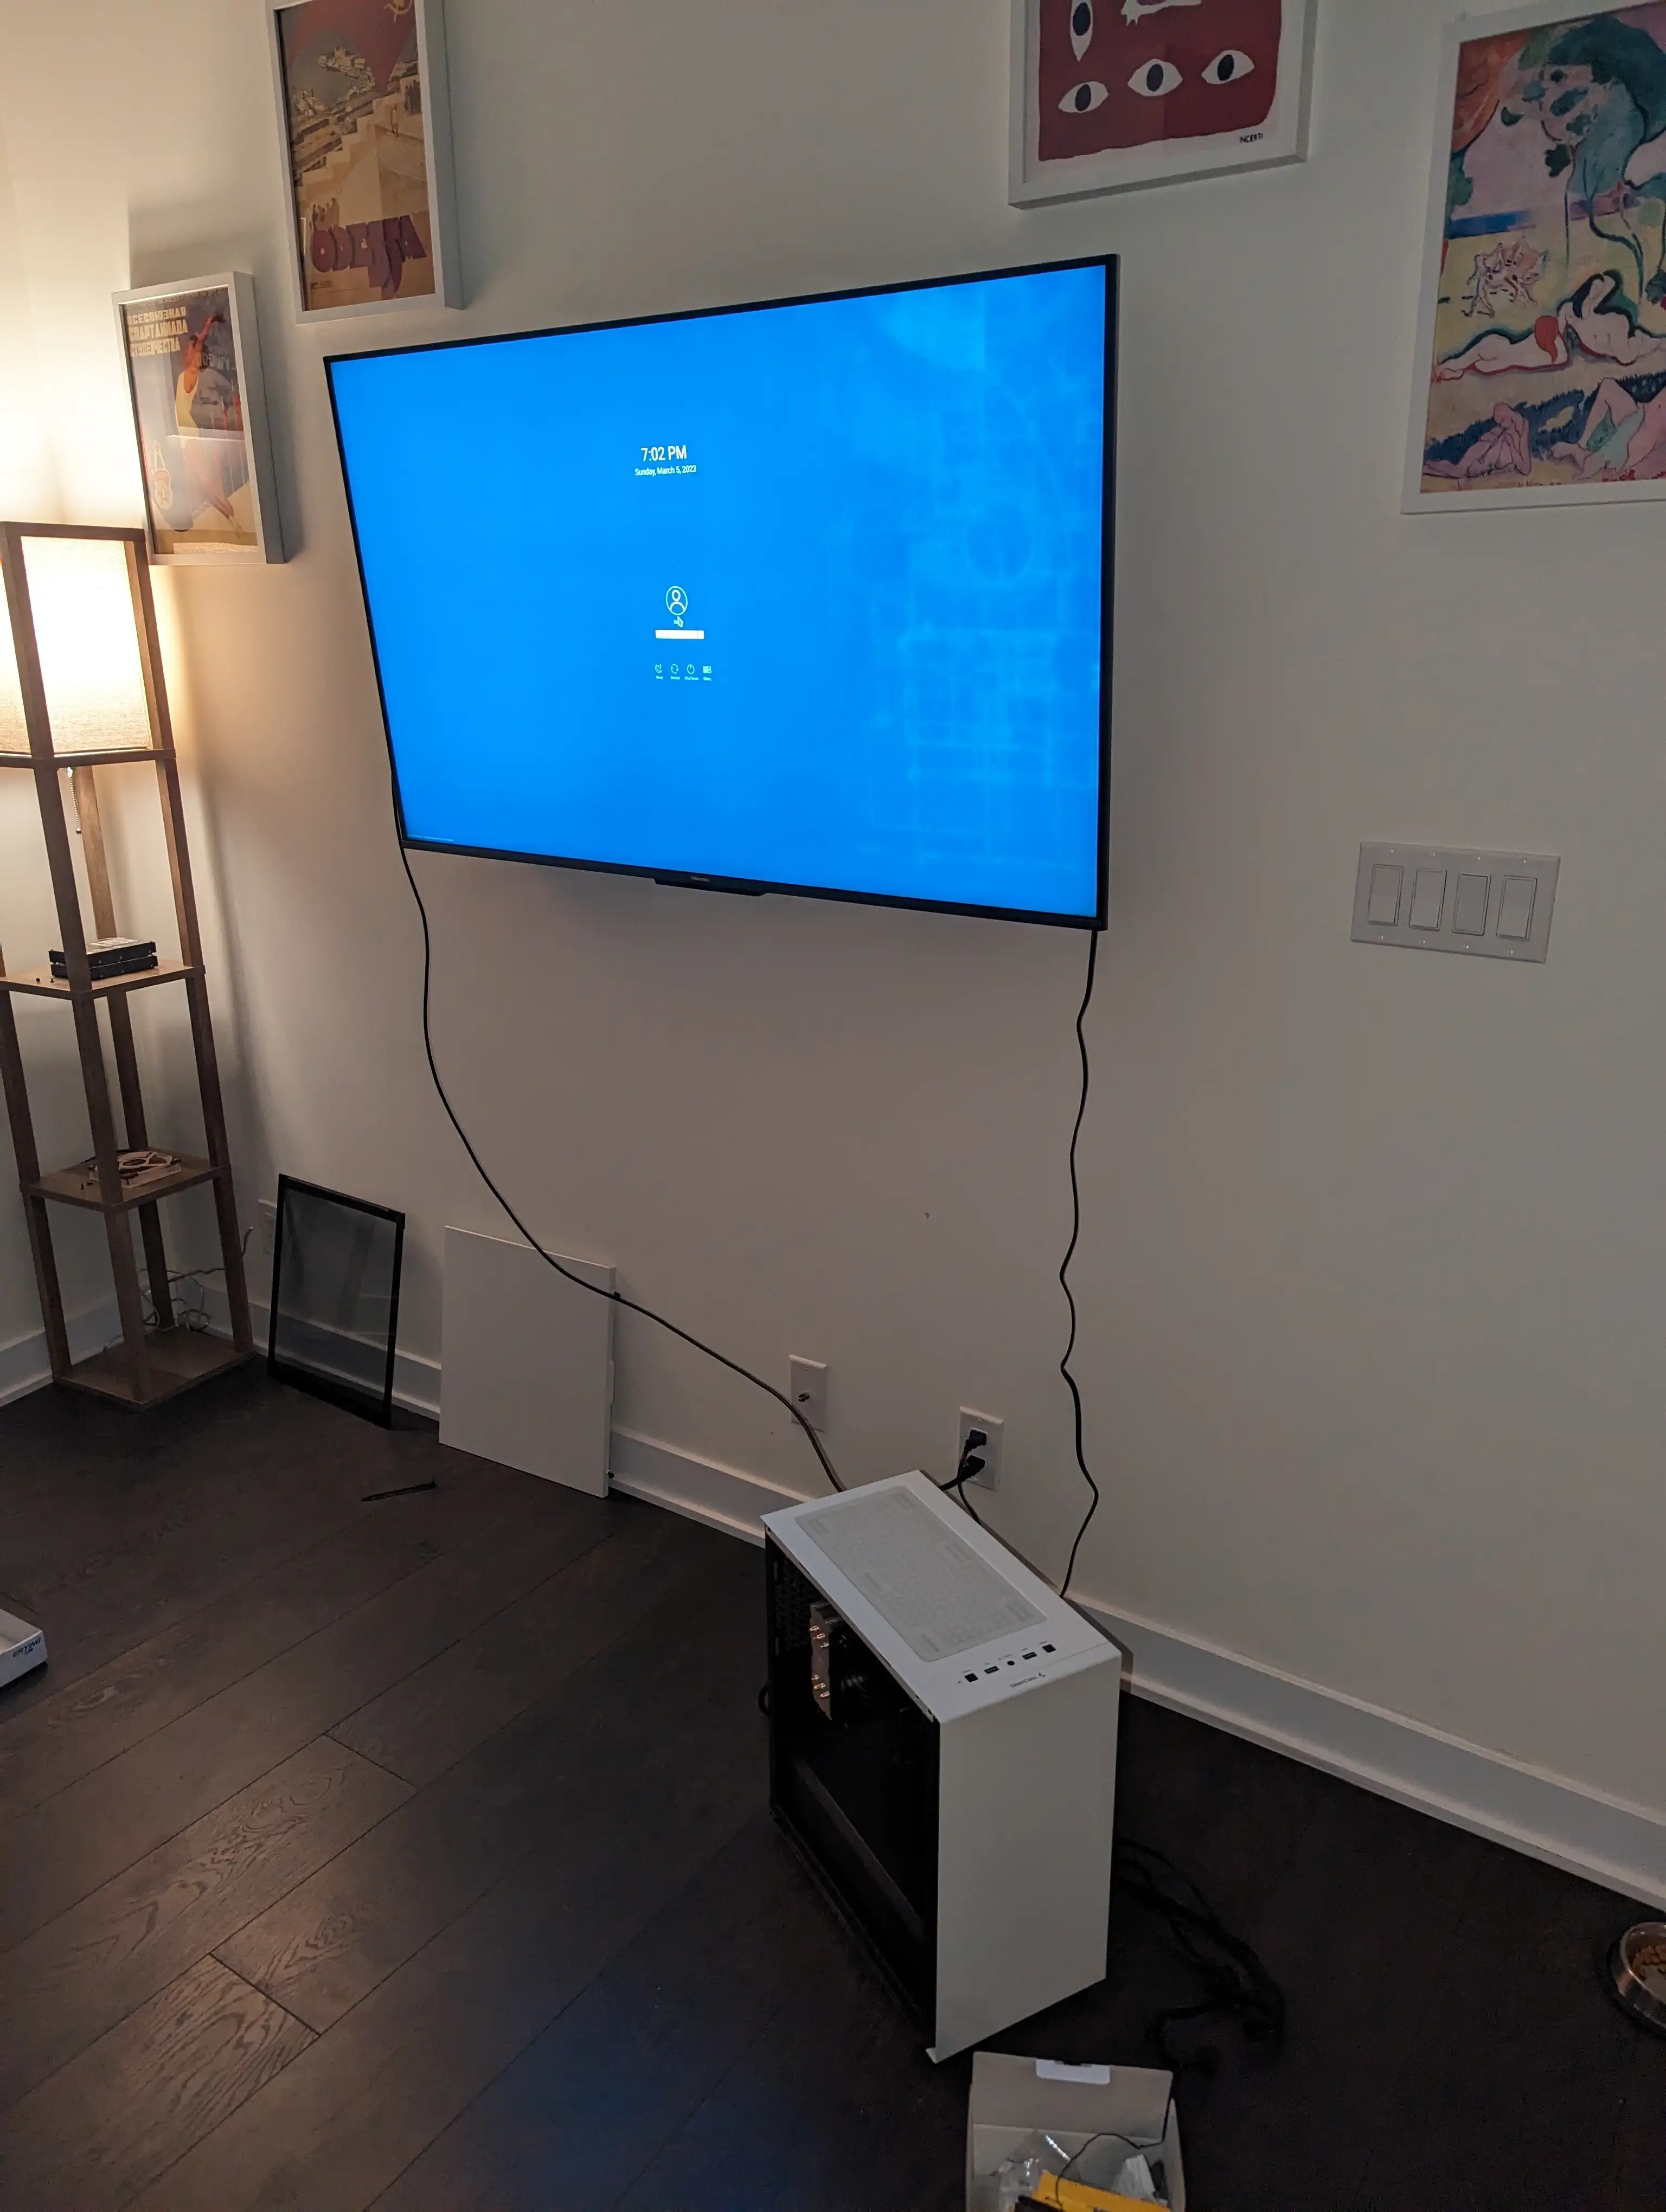 组装好的电脑照片，连接到电视，显示 KDE 登录屏幕。